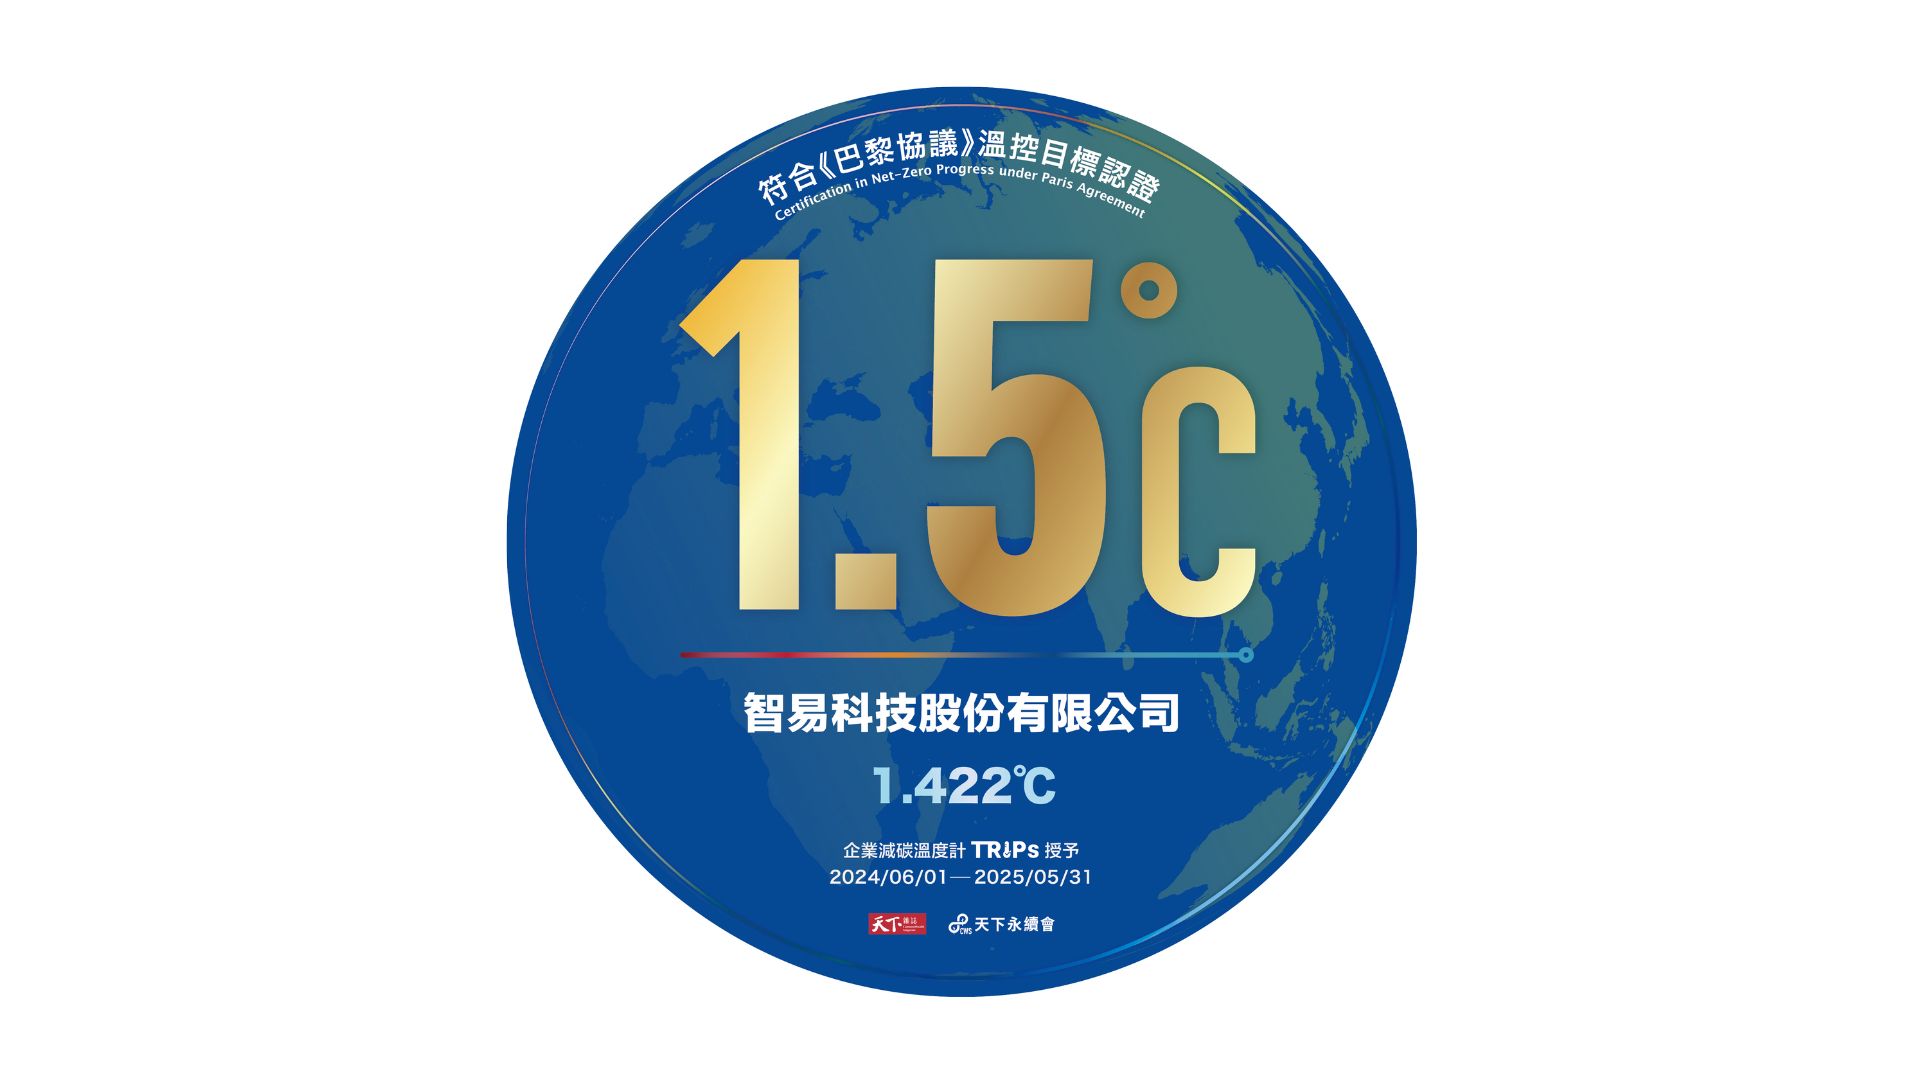 智易獲頒「企業減碳溫度計」最高等級「成效卓越」 落實1.5°C企業溫控目標